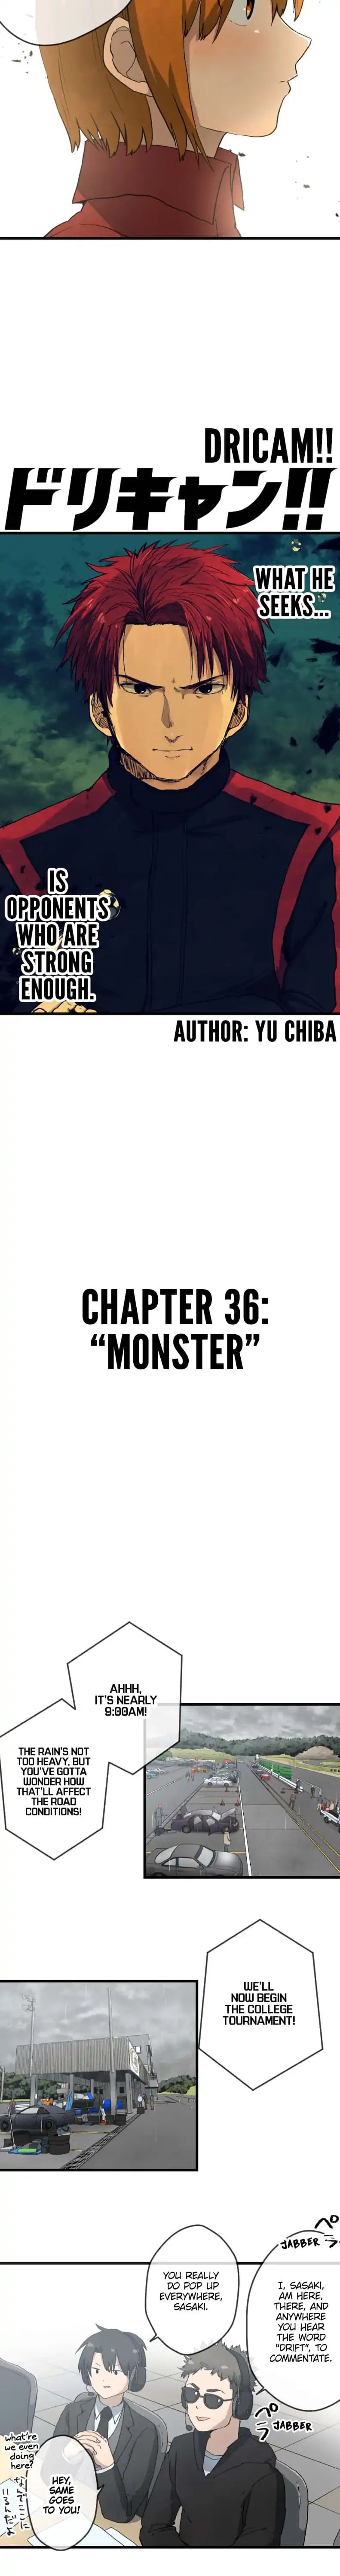 Dricam!! Chapter 36: Monster